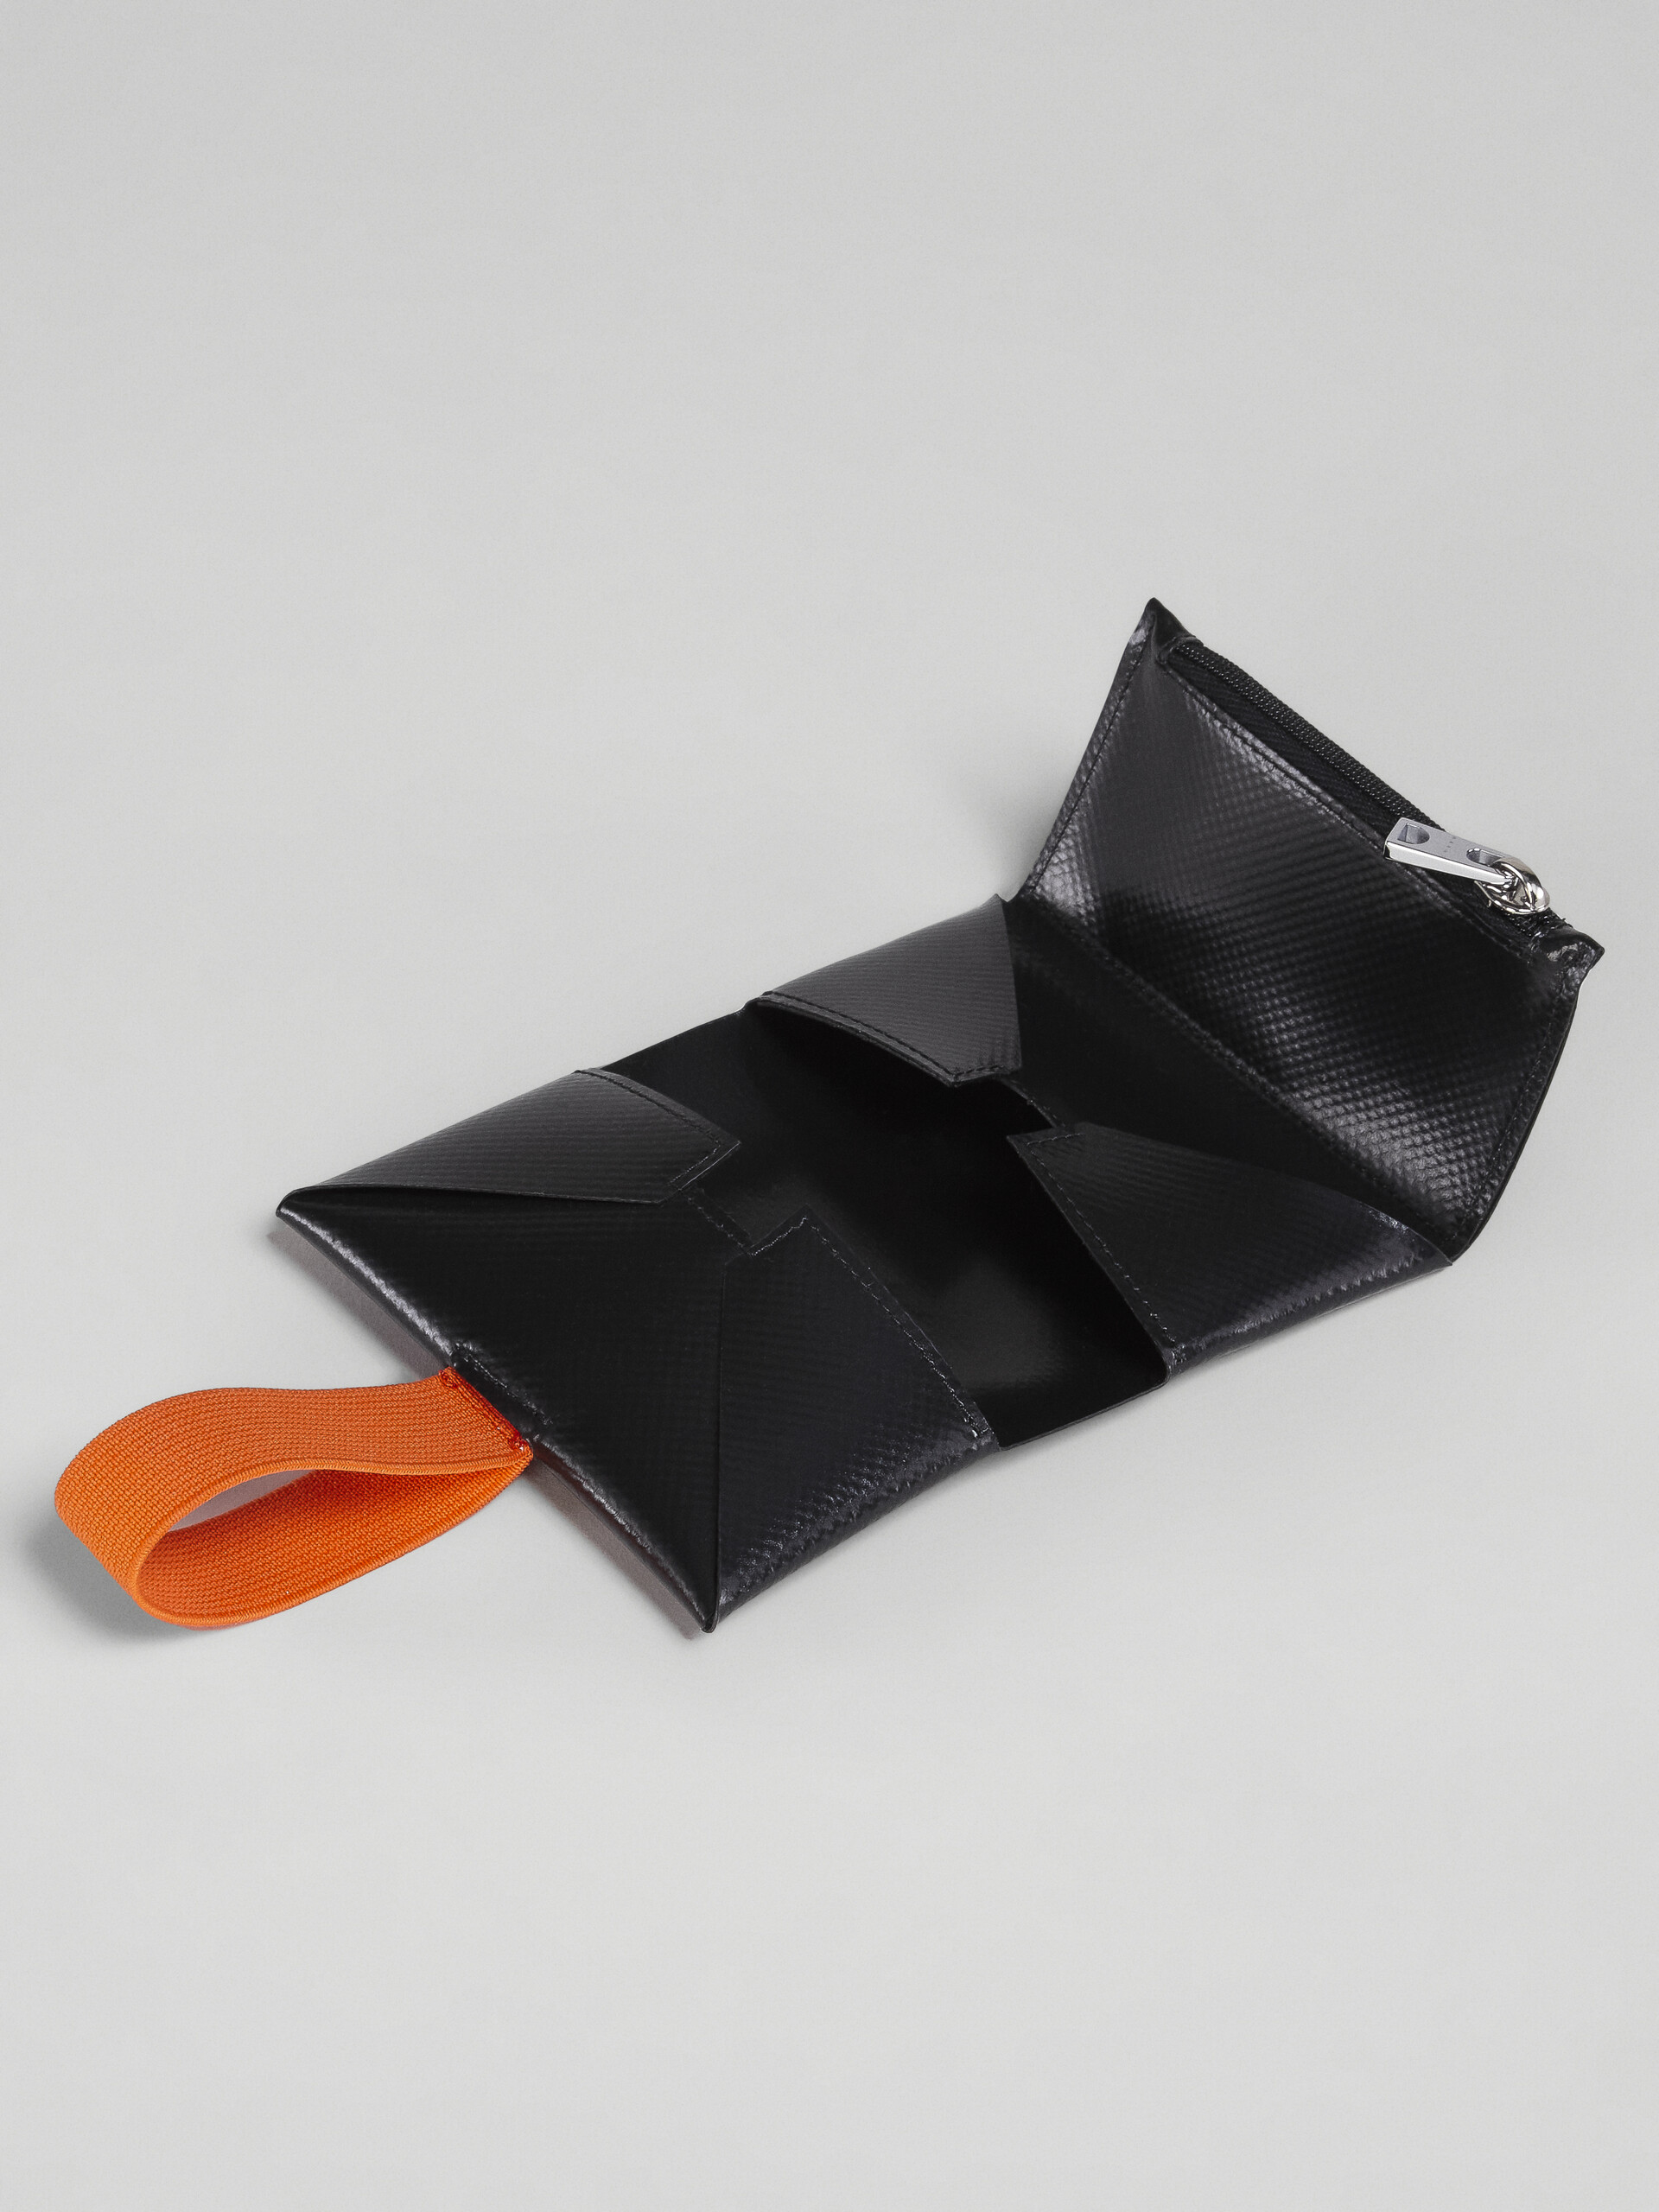 Portafoglio tri-fold in PVC nero e arancio - Portafogli - Image 5